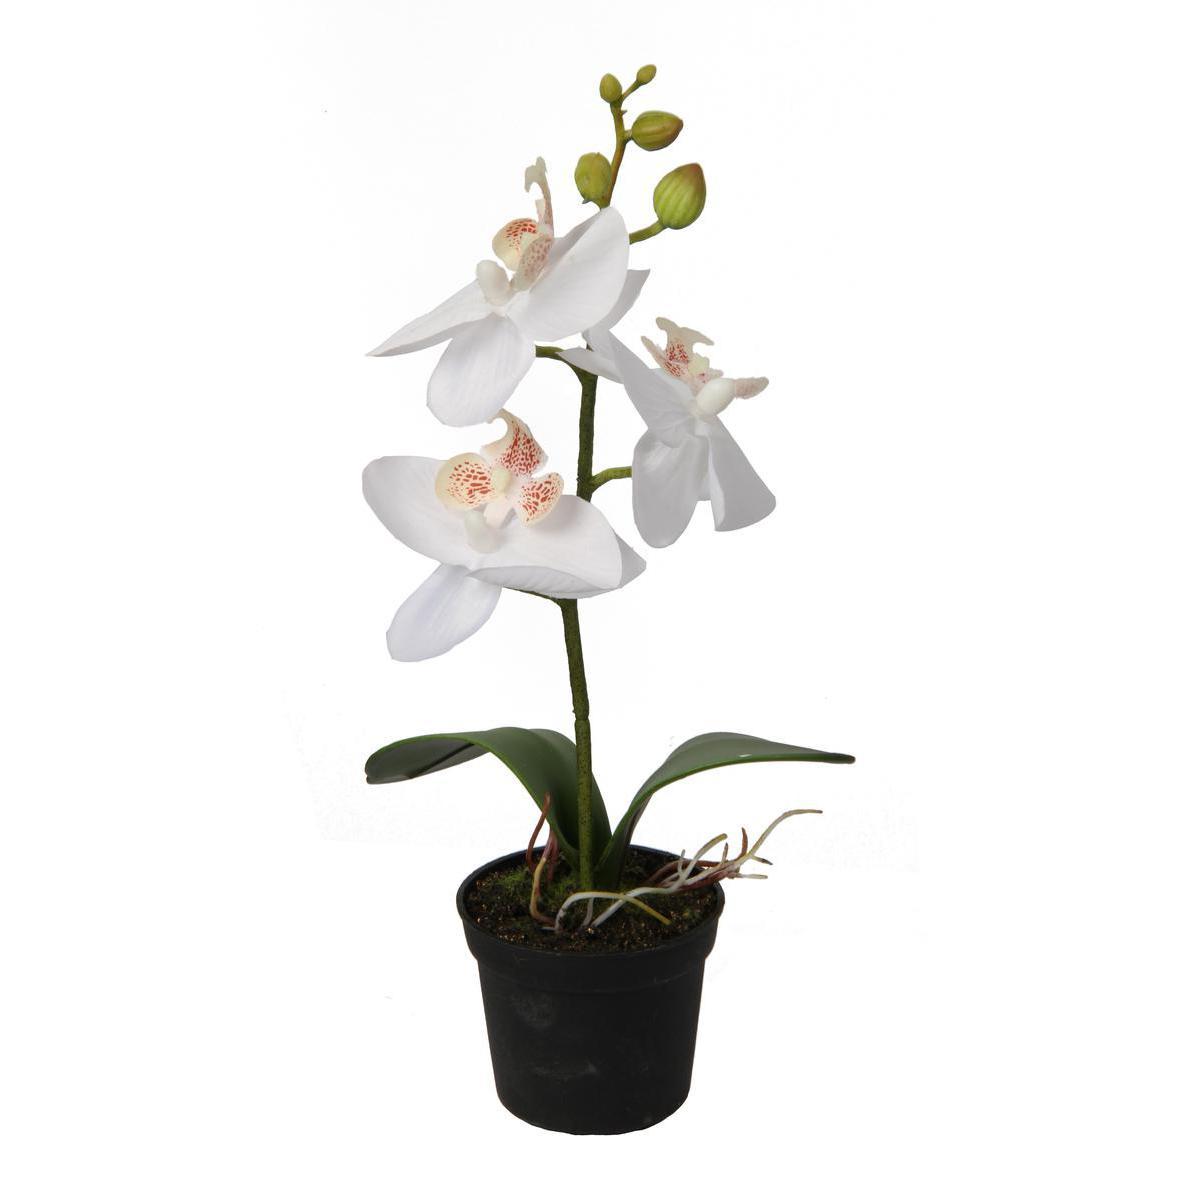 Orchidée en pot - Plastique et polyester - Hauteur 24 cm - Blanc et fuchsia